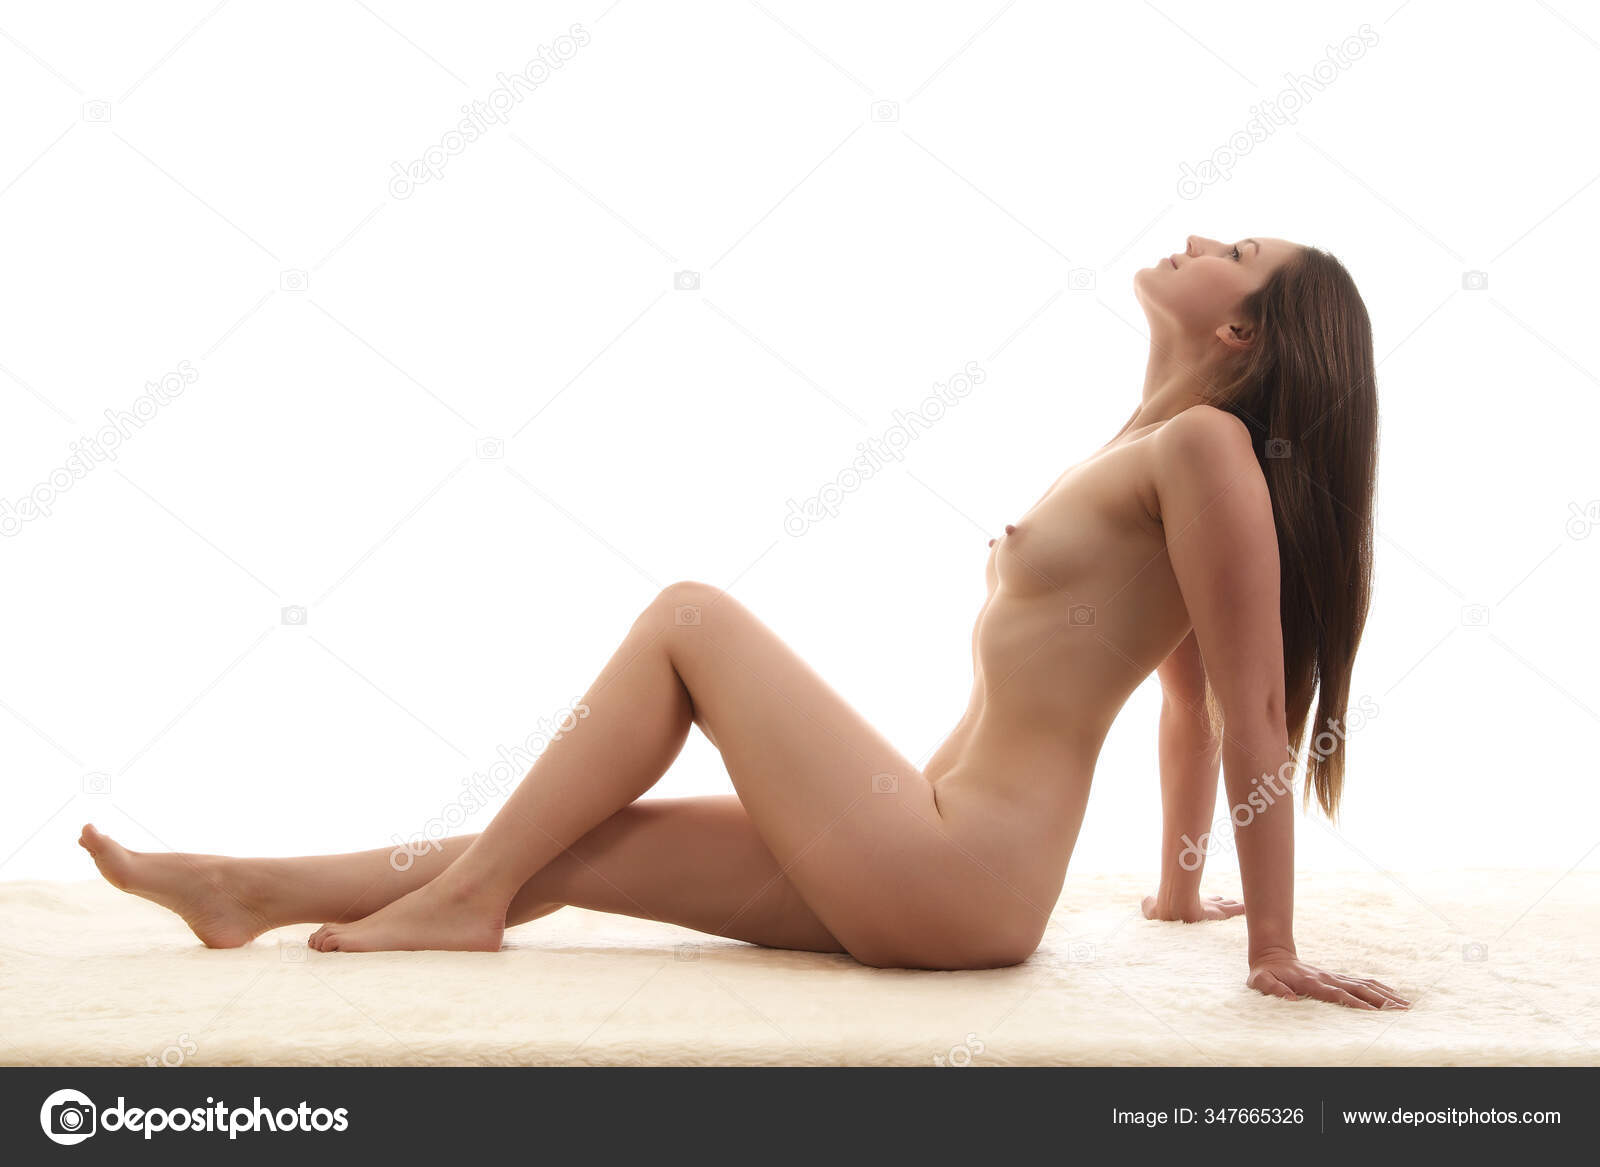 https://st3n.depositphotos.com/2970081/34766/i/1600/depositphotos_347665326-stock-photo-young-sexy-girl-nude-beautiful.jpg